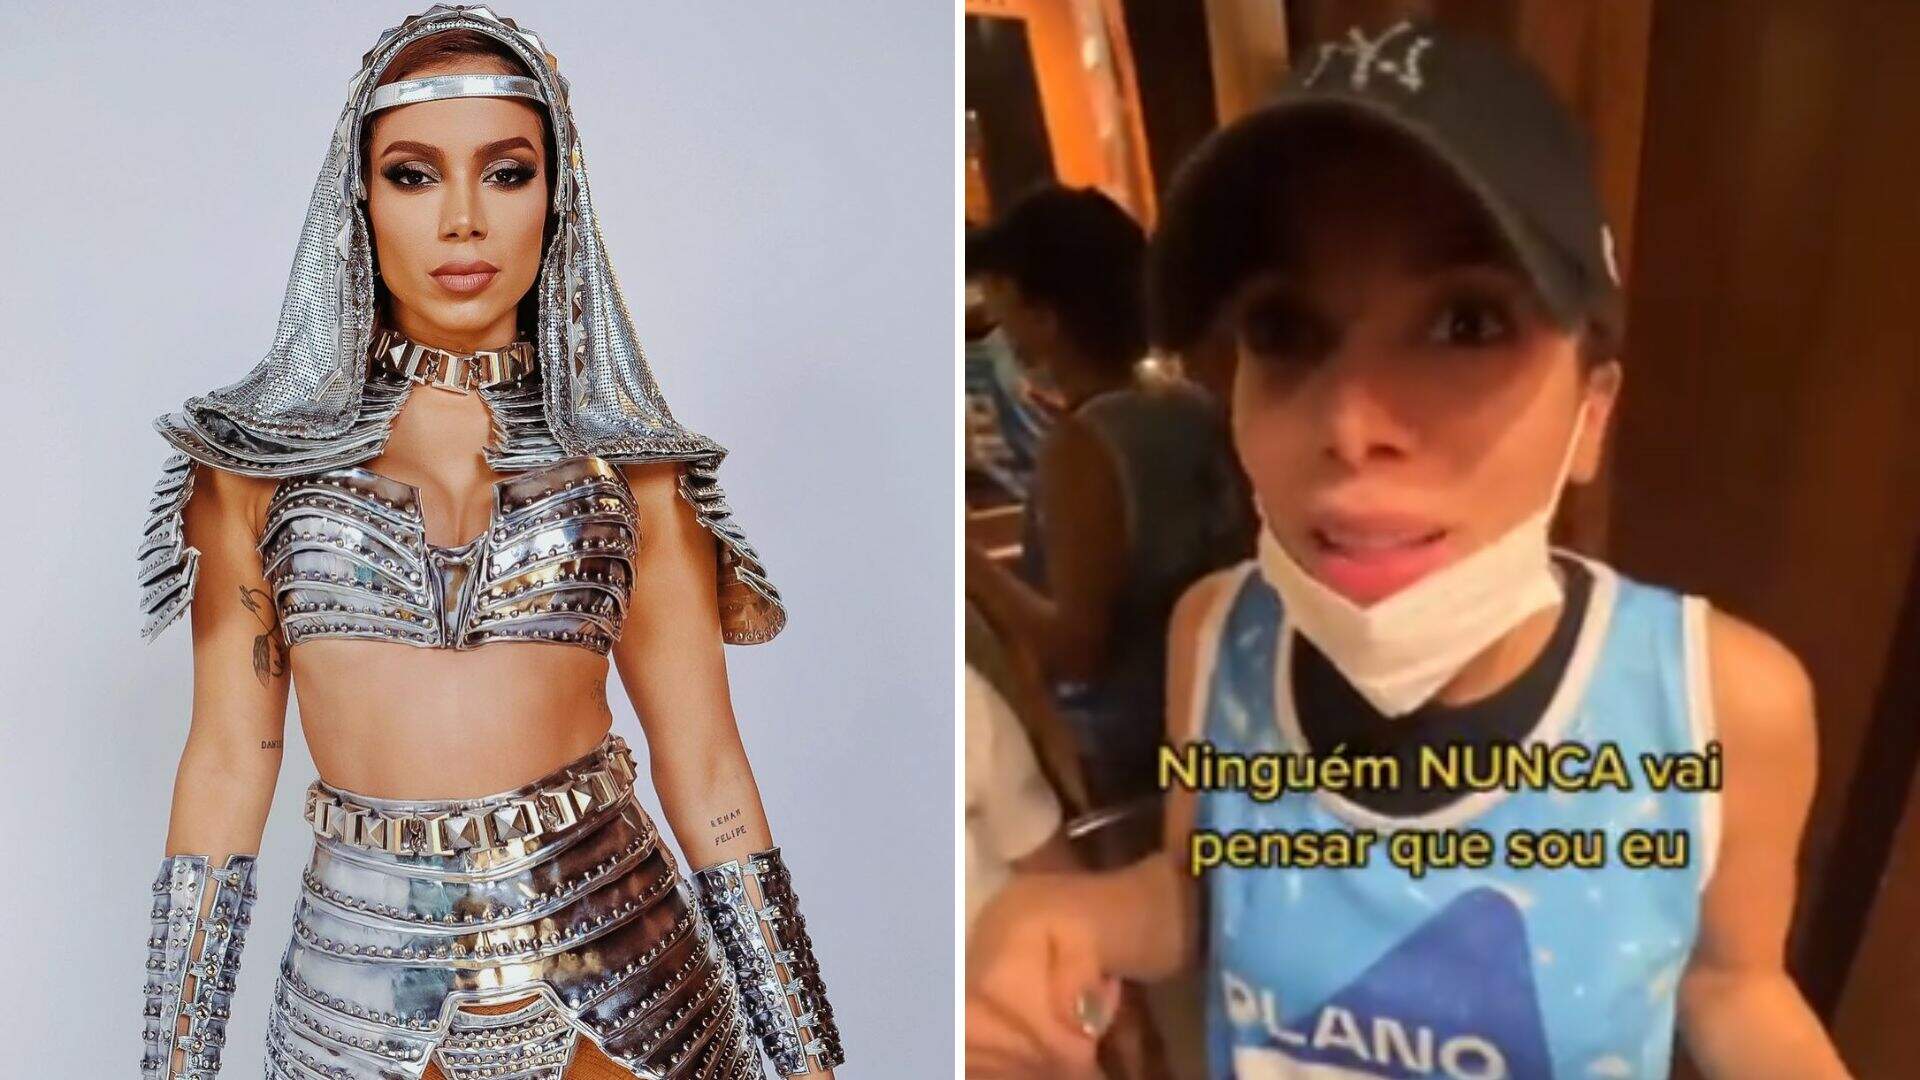 Anitta se disfarça para pular Carnaval em Salvador: “Ninguém vai saber que sou eu” - Metropolitana FM